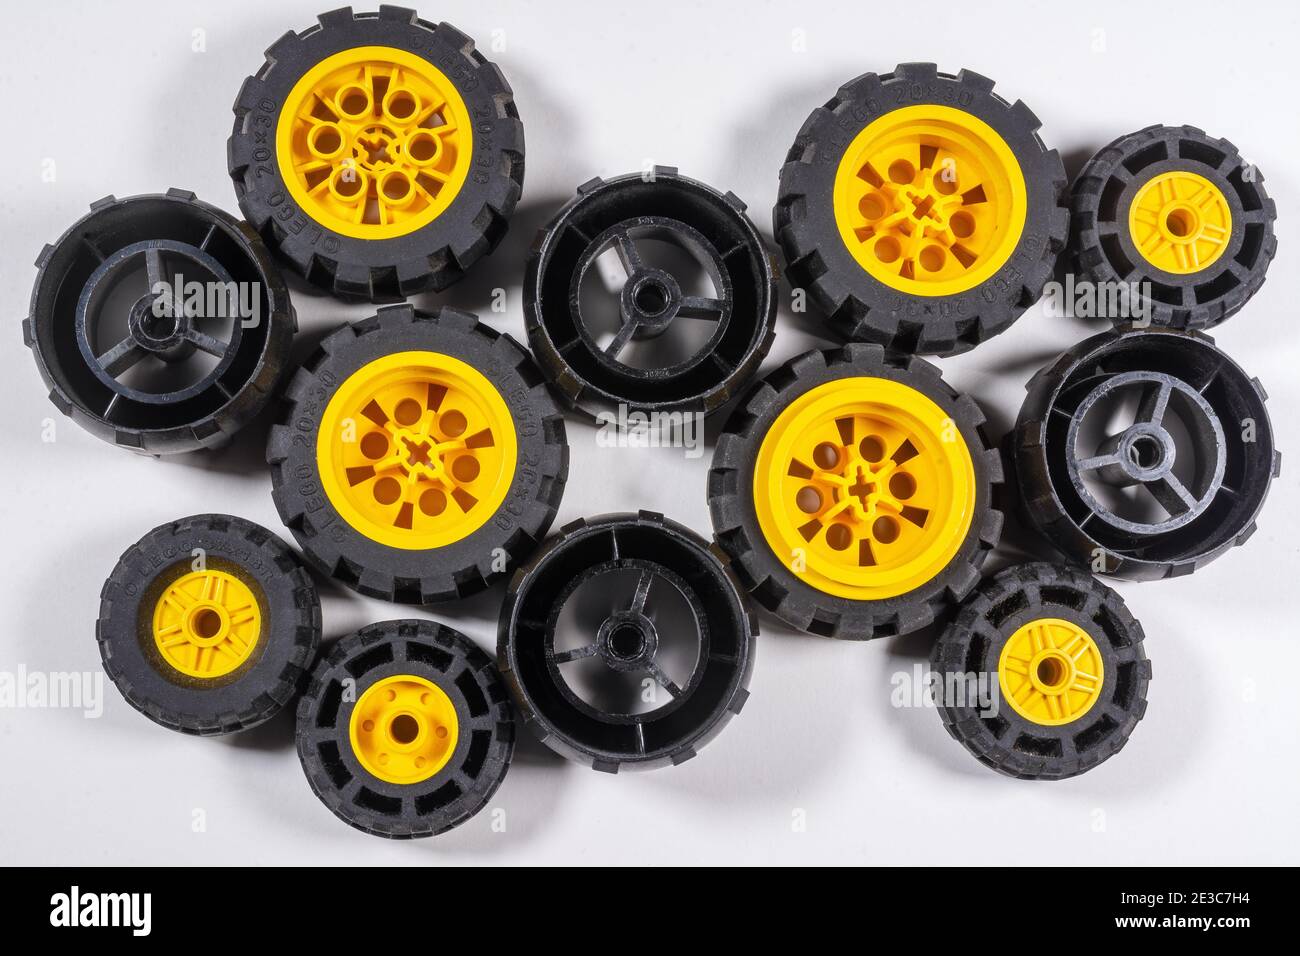 Cerchi Lego neri e gialli di diverse dimensioni Foto Stock